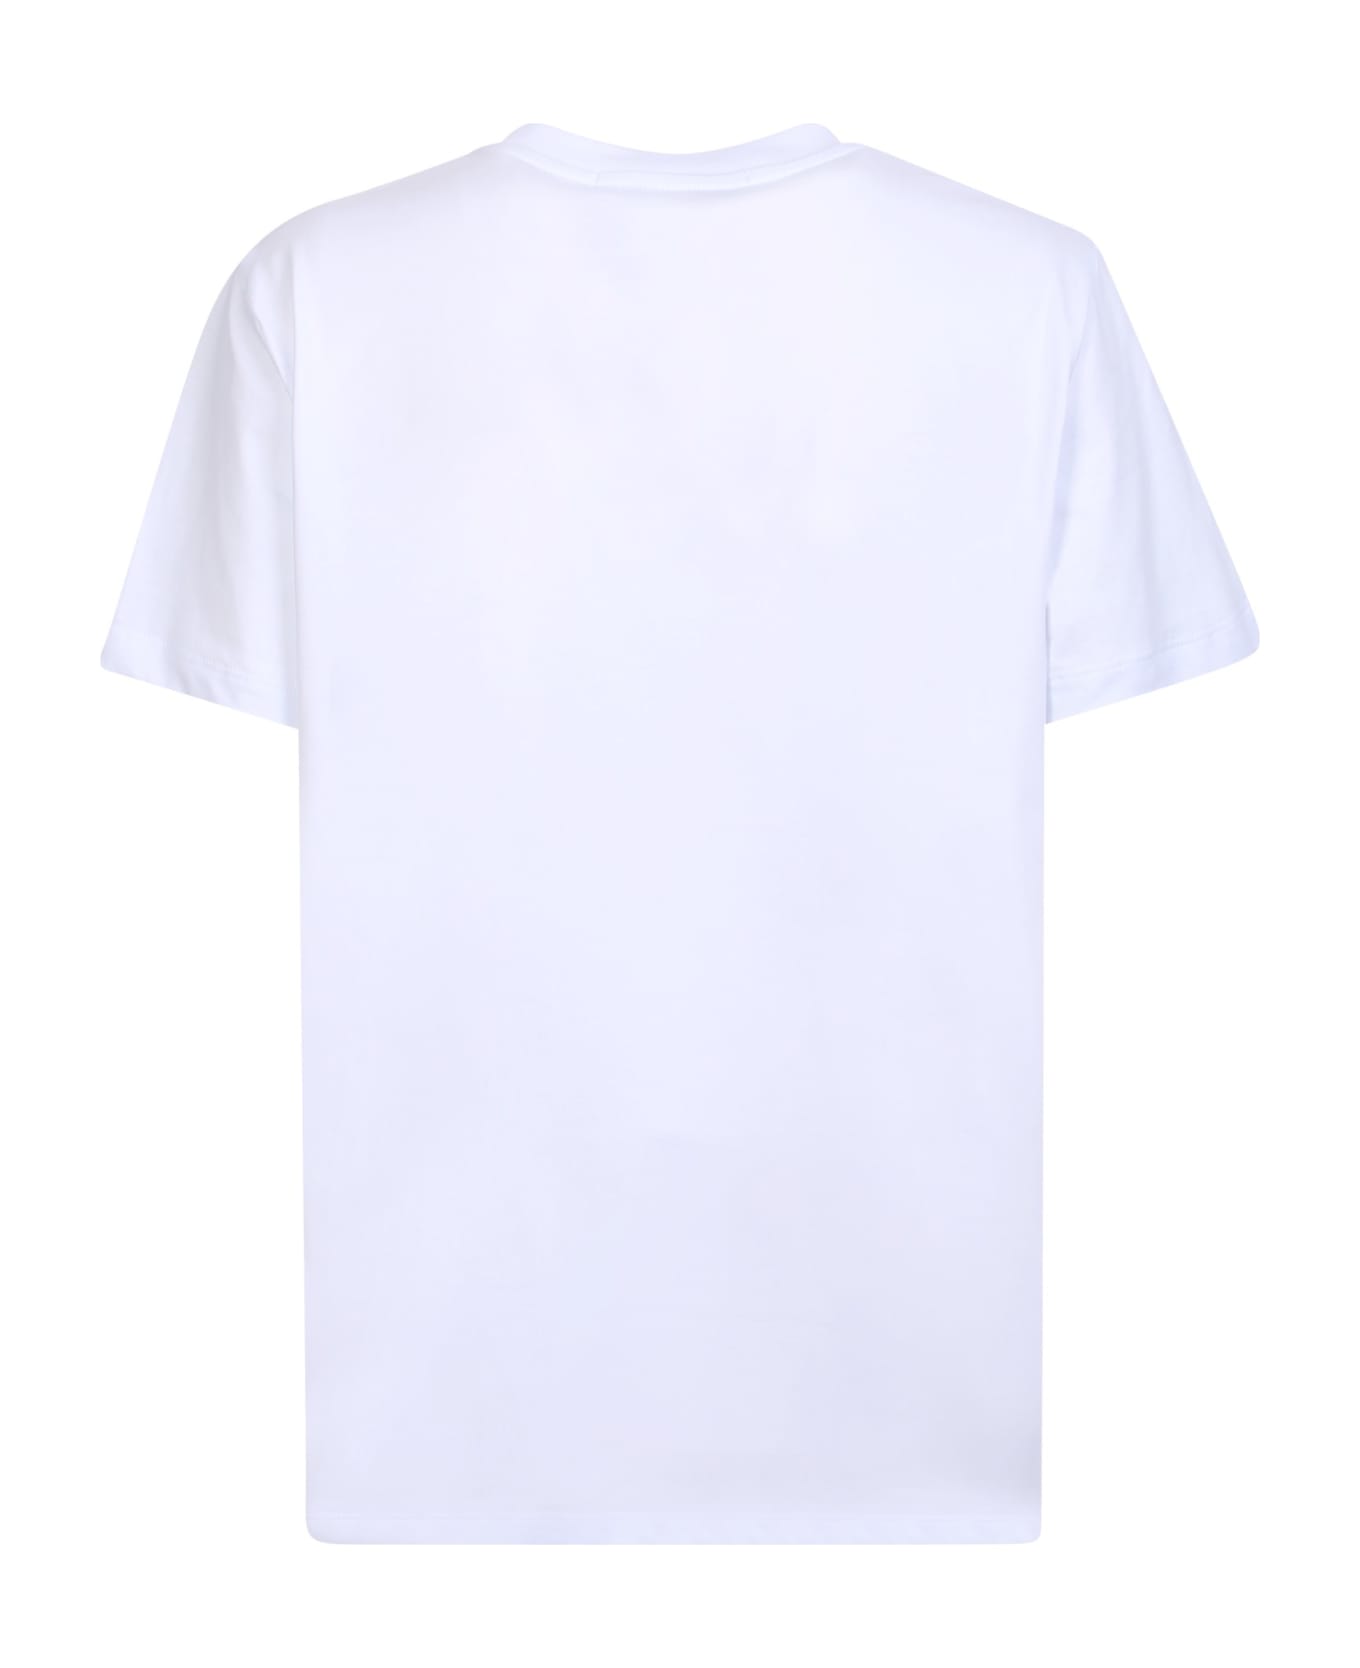 MSGM Bold Logo White And Black T-shirt - White Tシャツ